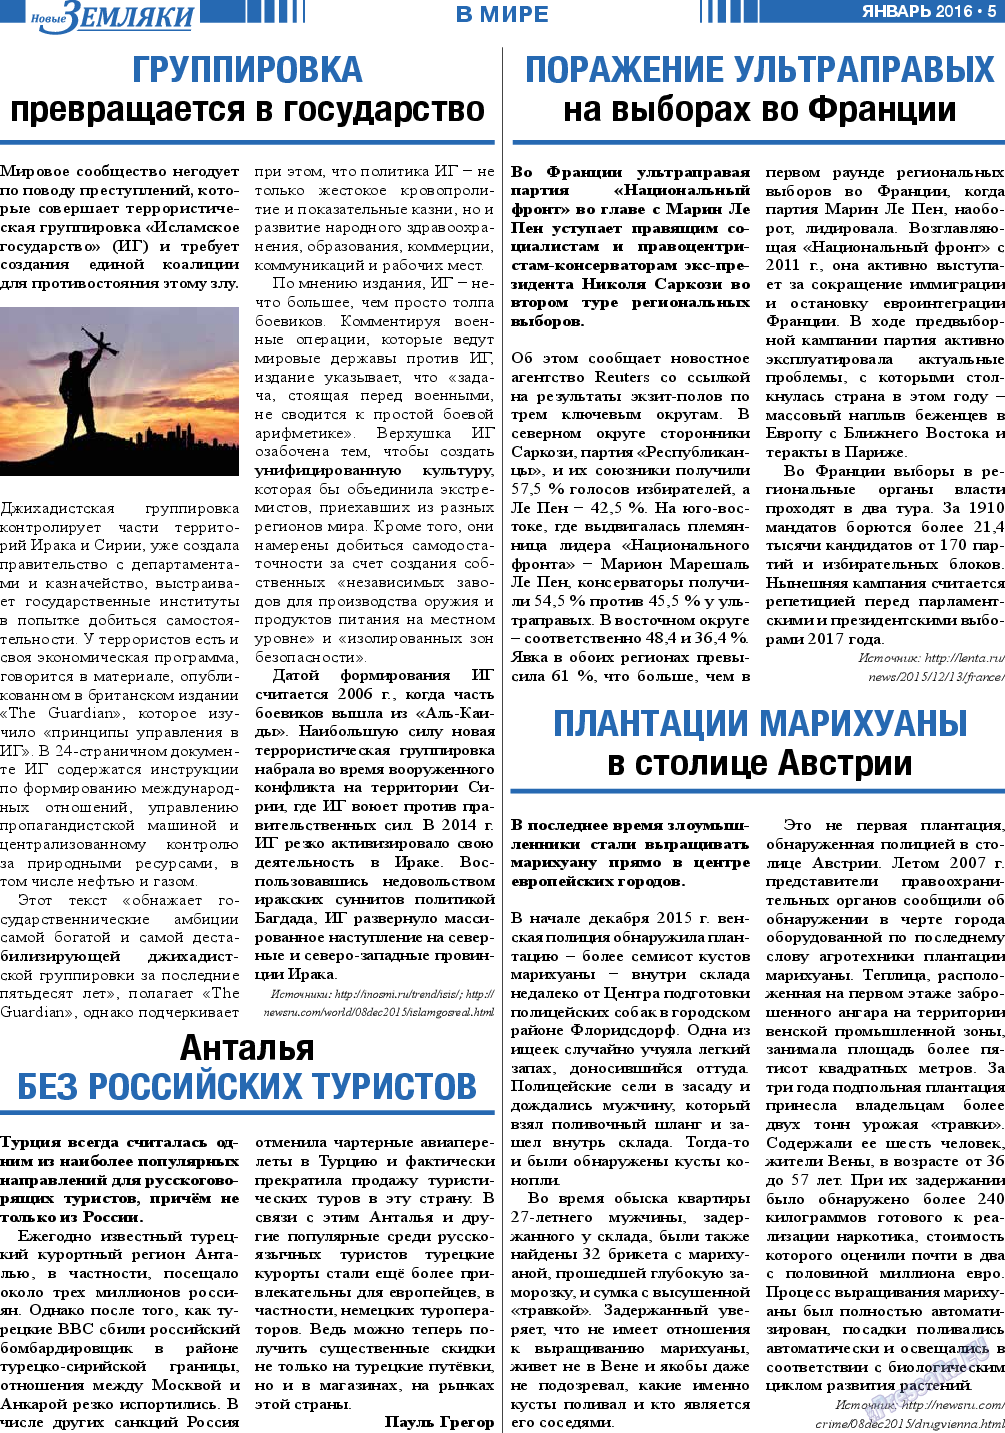 Новые Земляки, газета. 2016 №1 стр.5